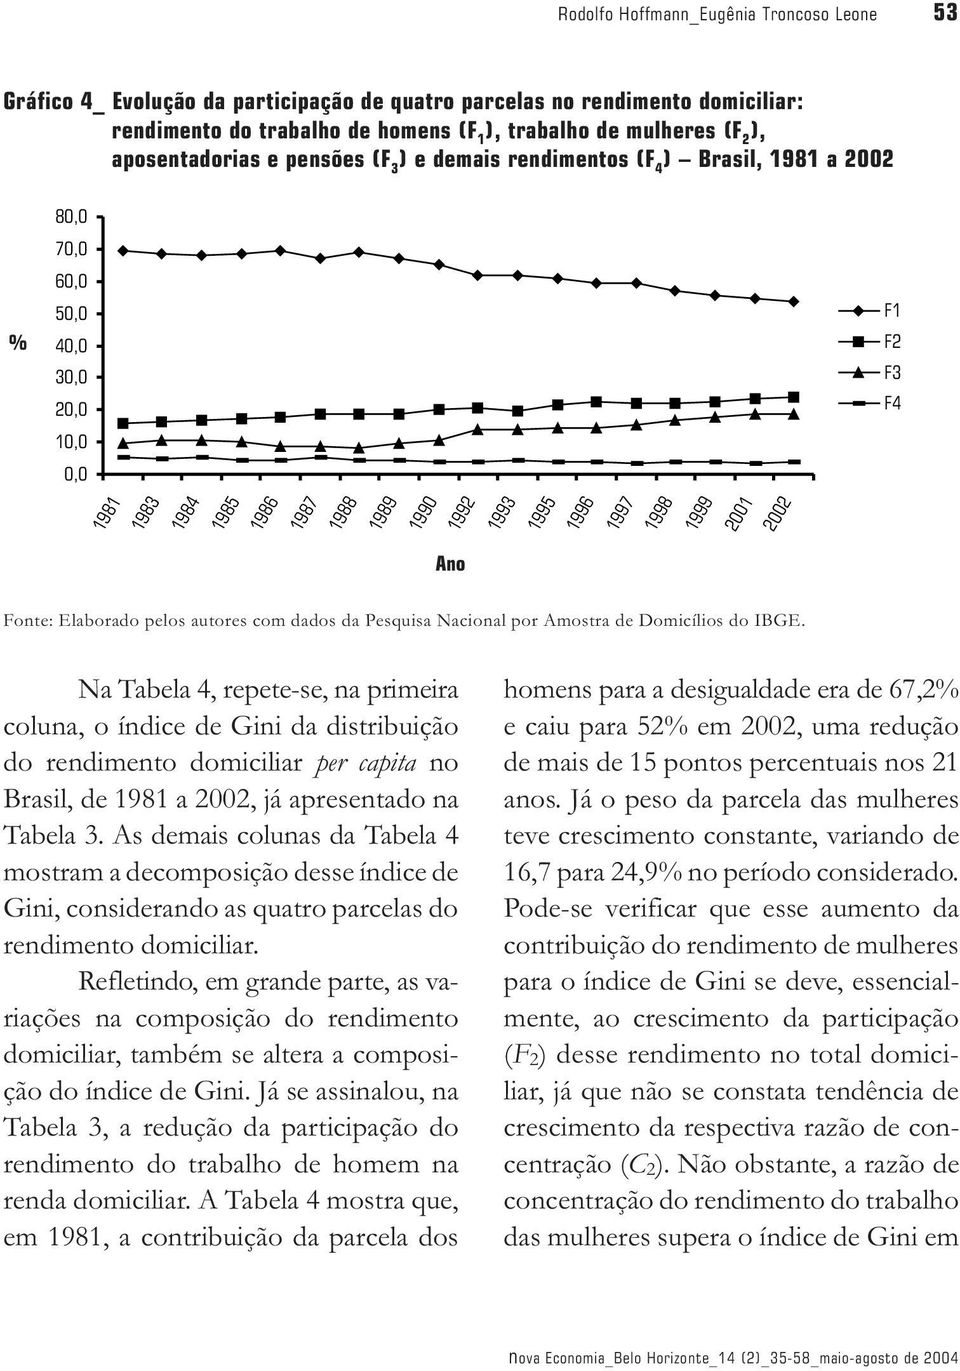 1996 1997 1998 1999 2001 2002 Ano Fonte: Elaborado pelos autores com dados da Pesquisa Nacional por Amostra de Domicílios do IBGE.